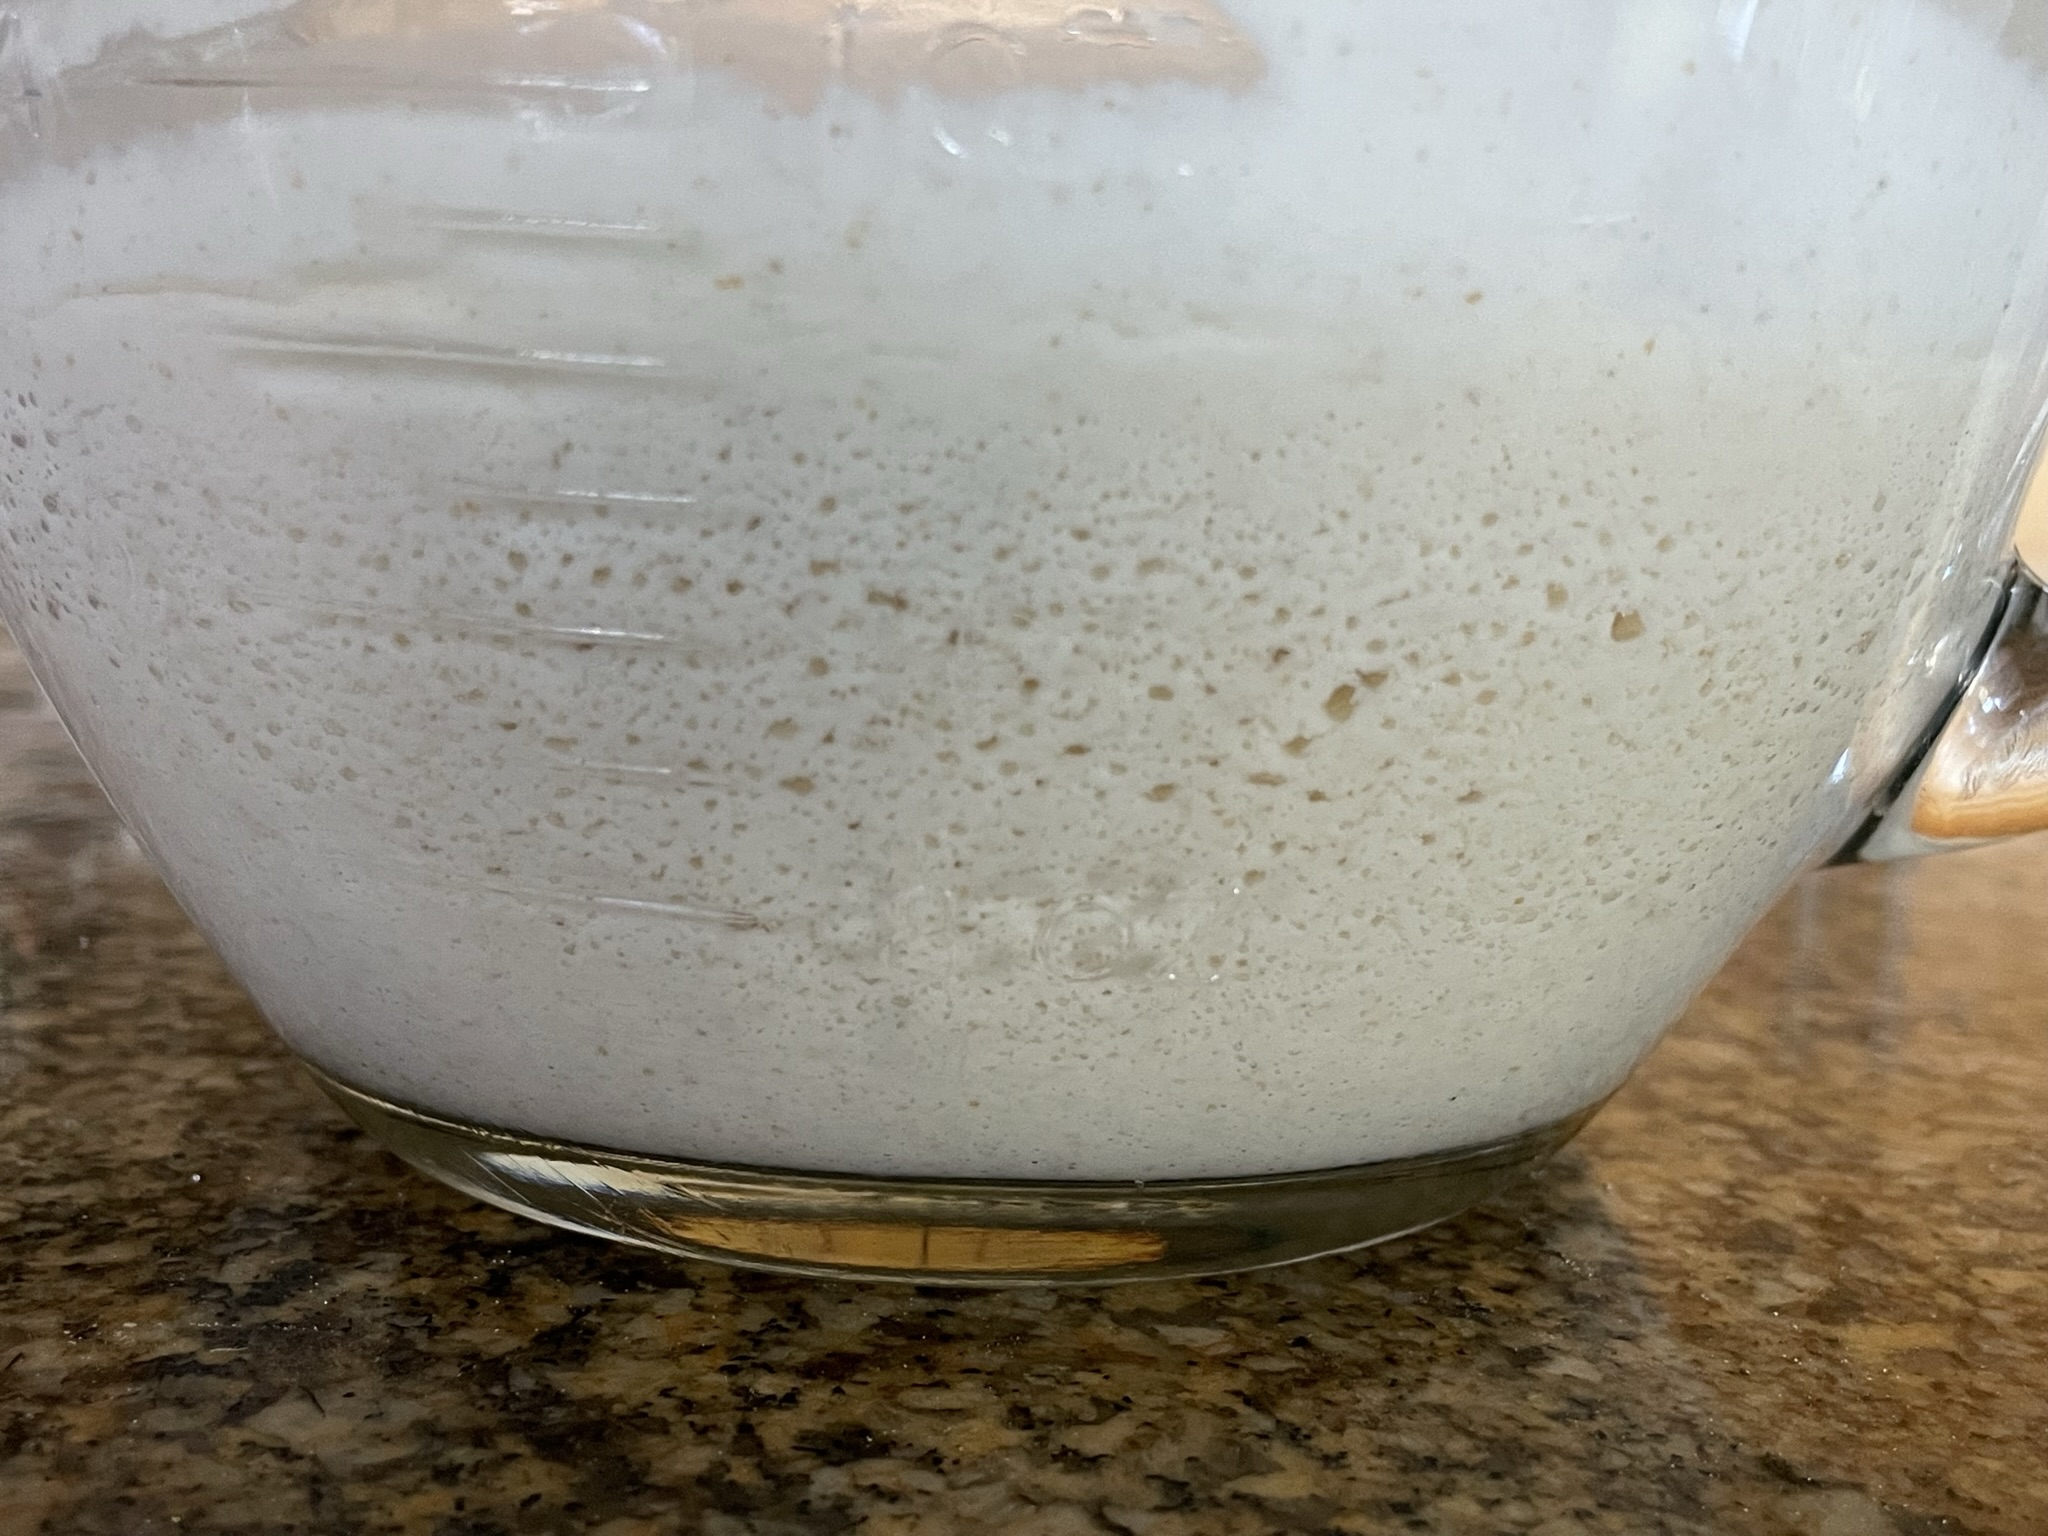 Pancake batter after fermentation